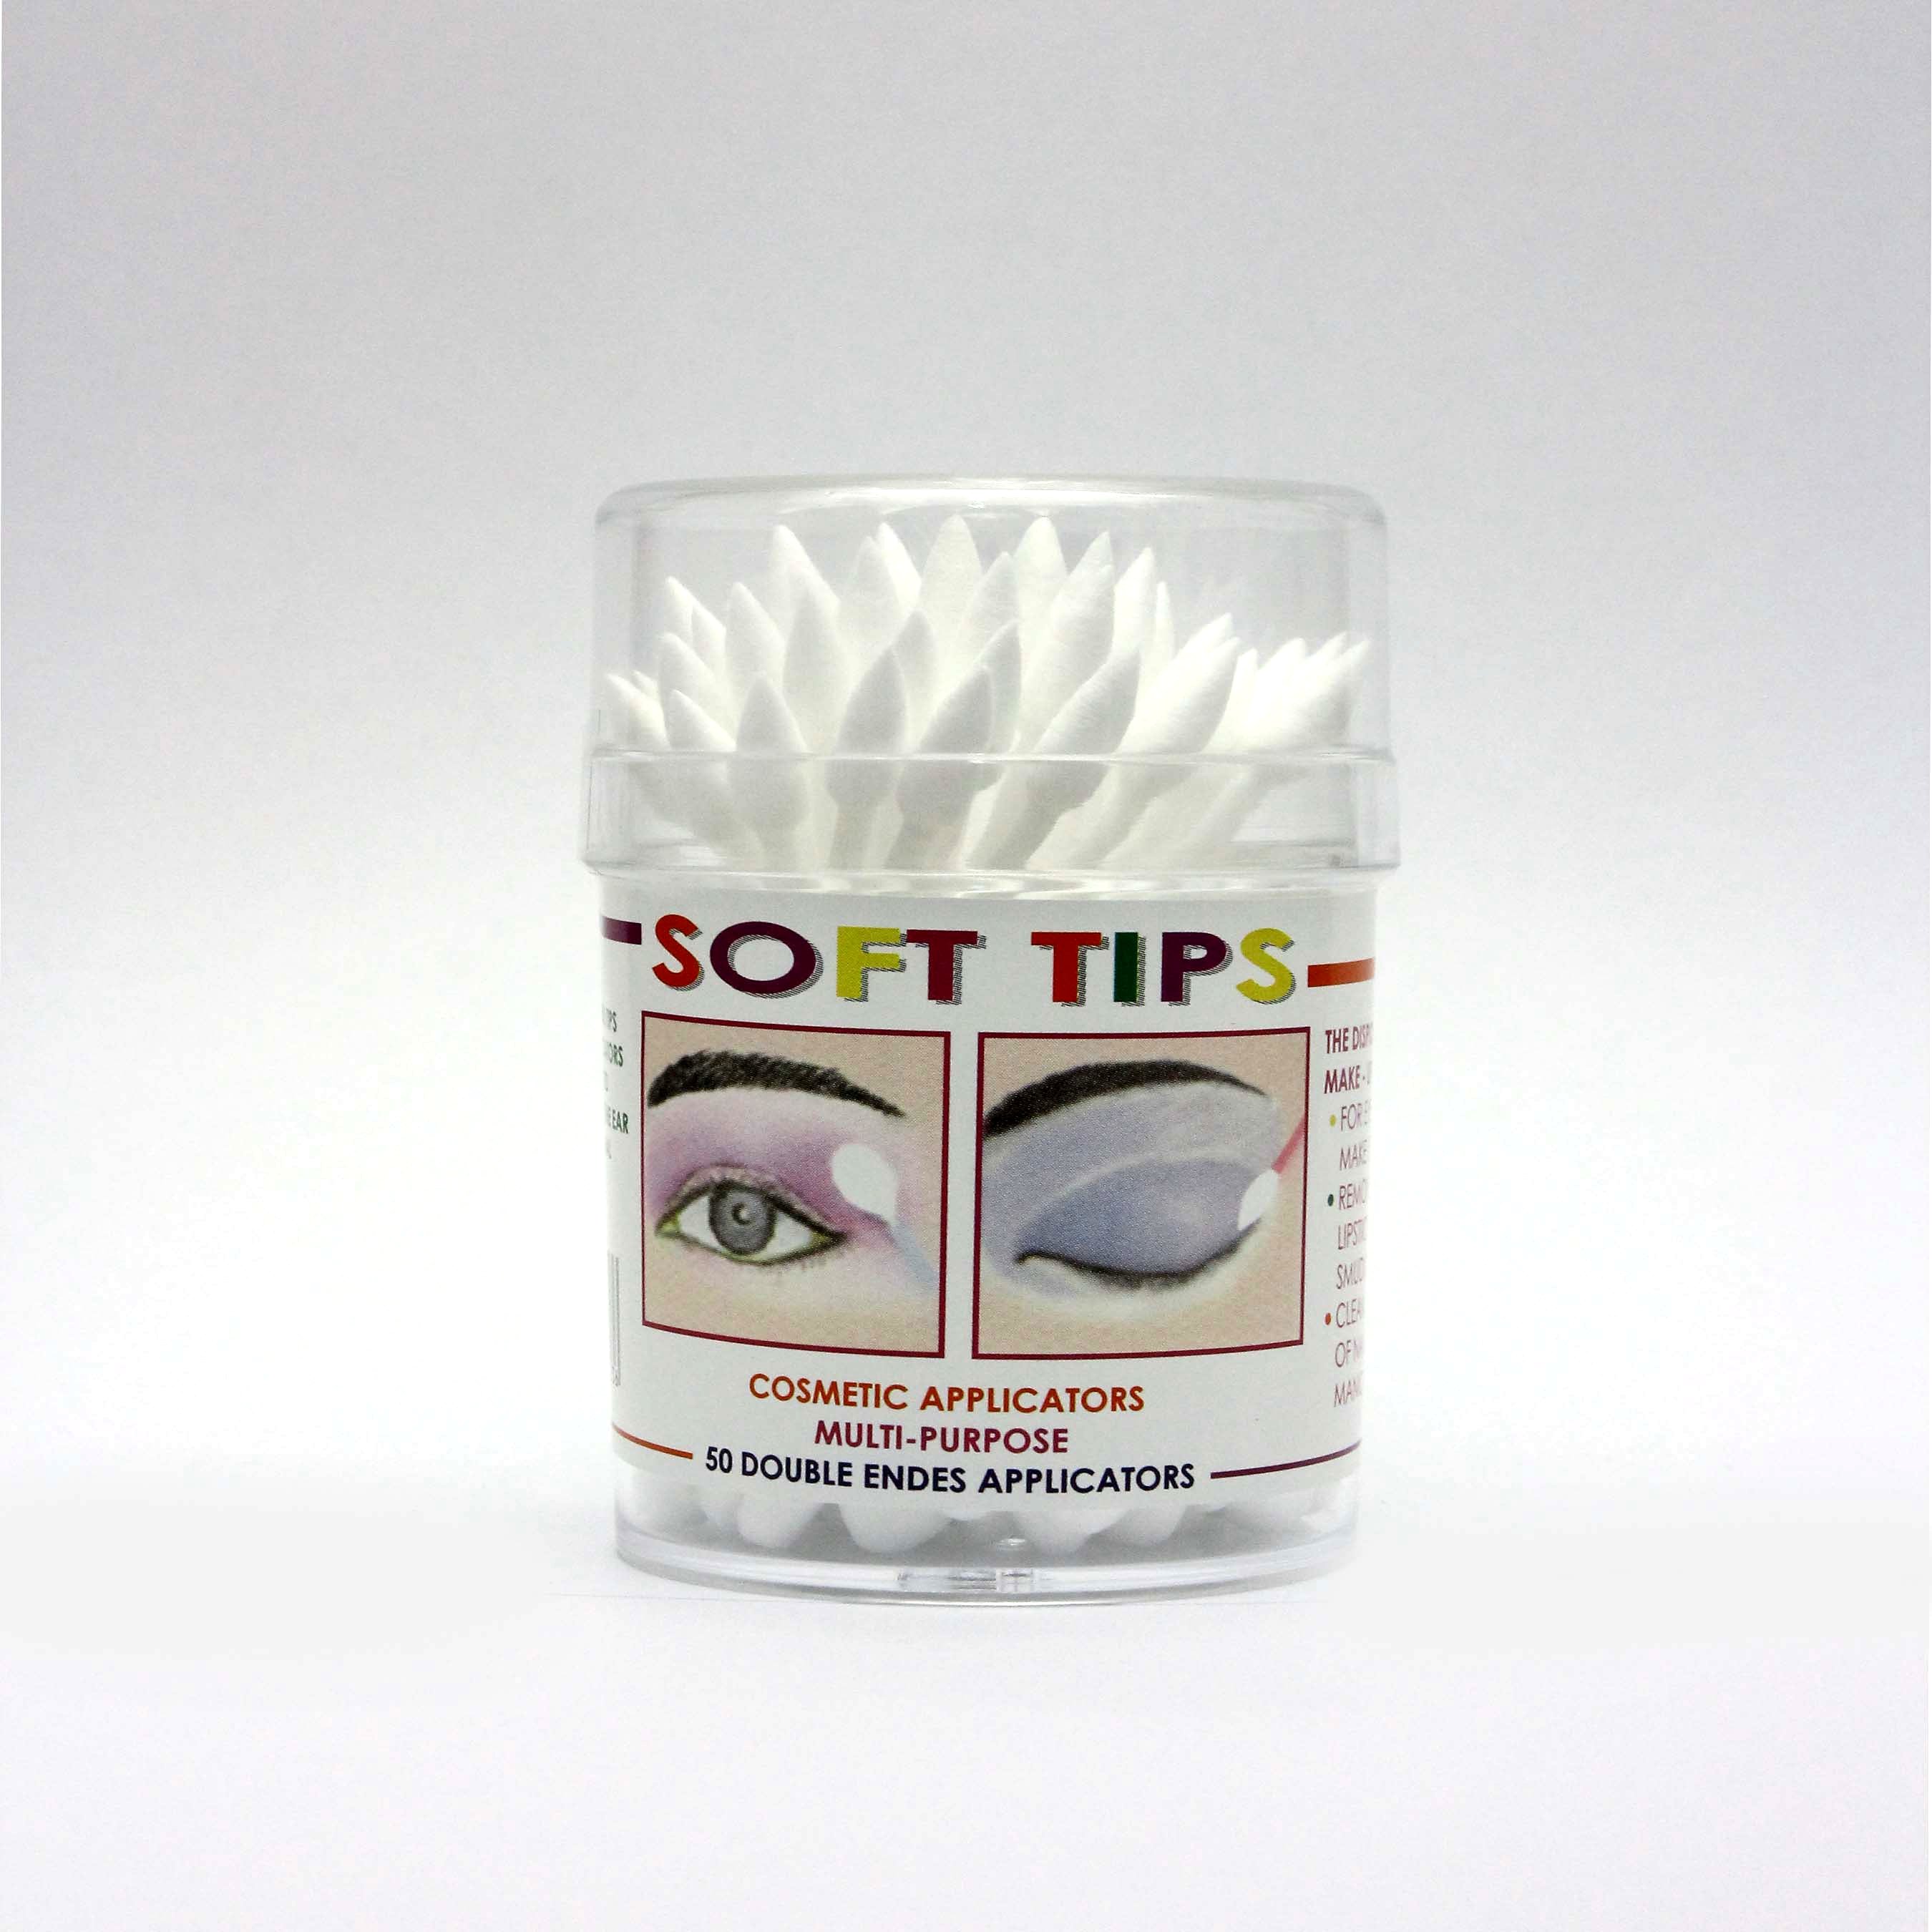 Soft Tips Makeup Applicators 50